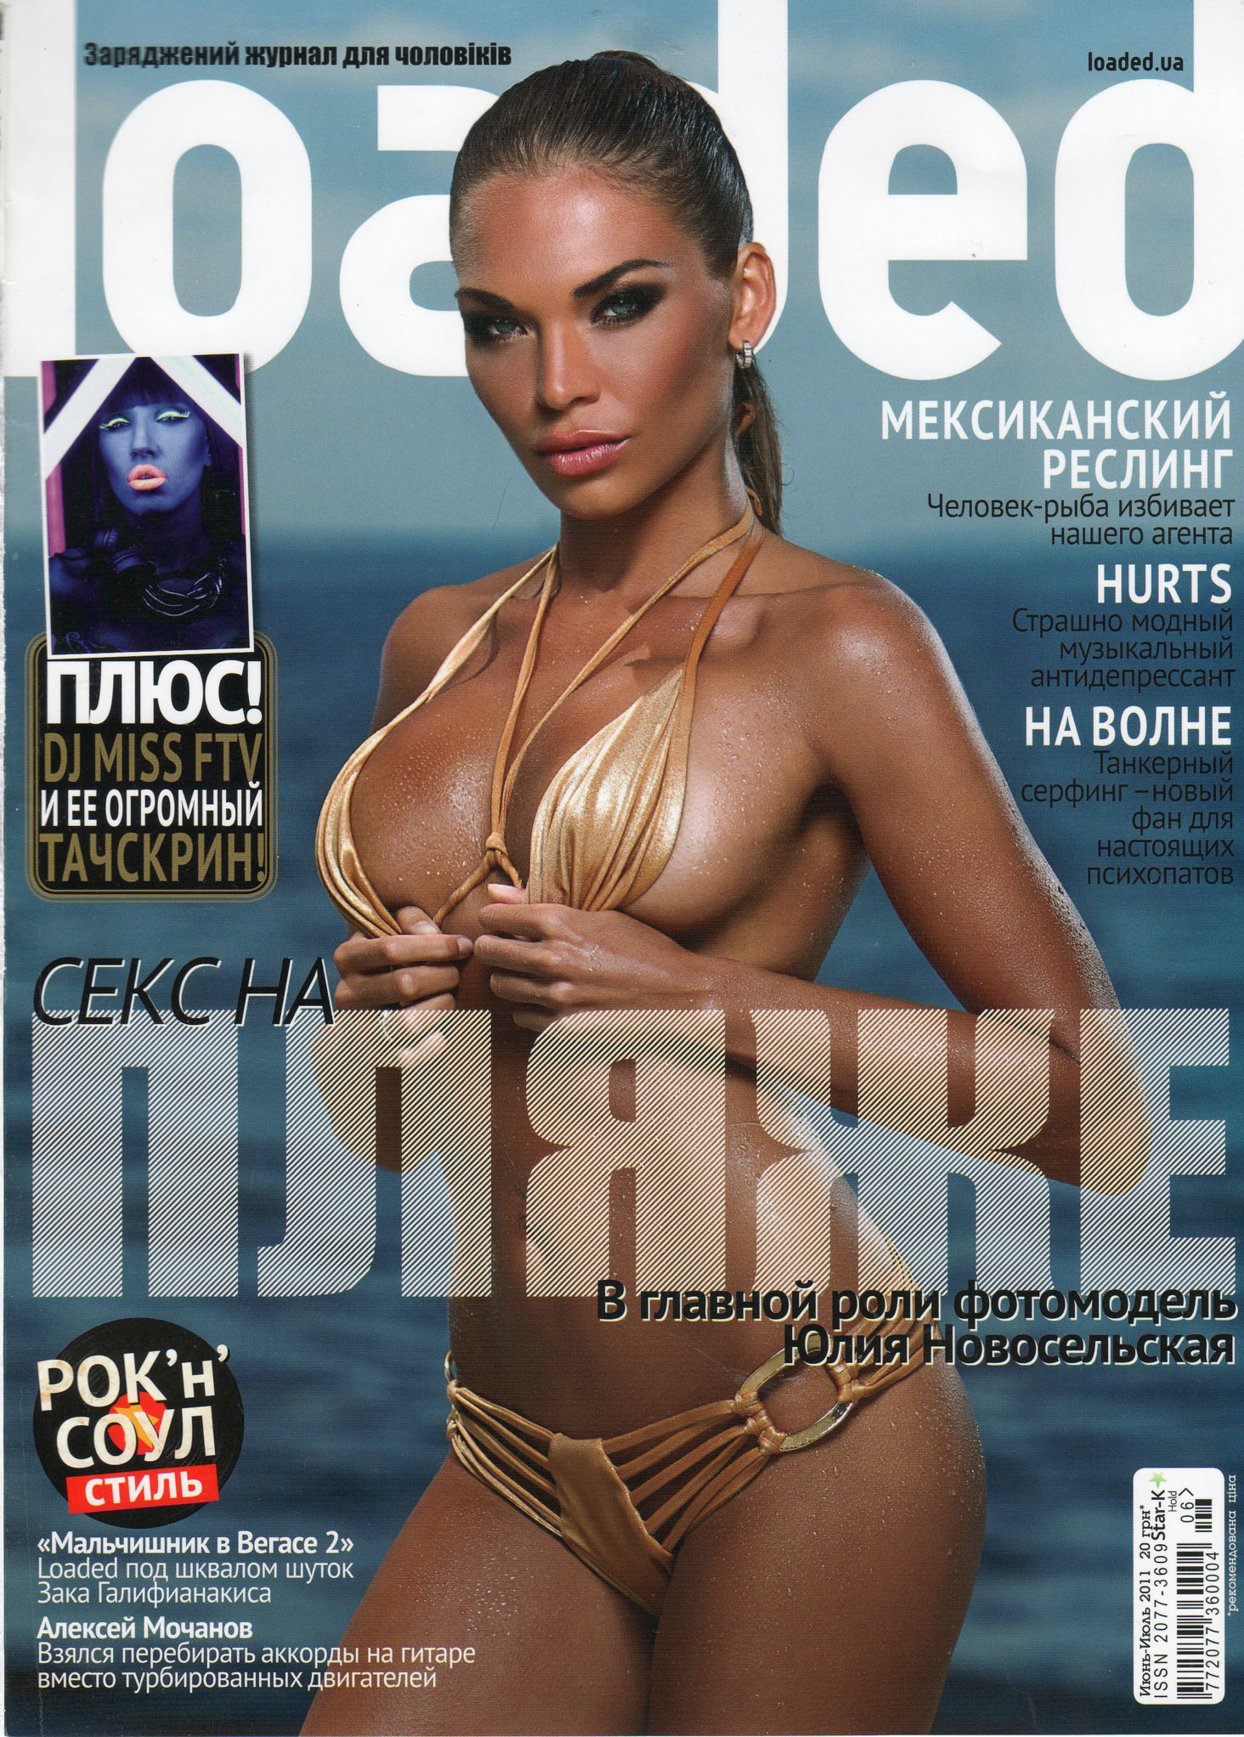 Julia Novoselskaya nude in Loaded Magazine